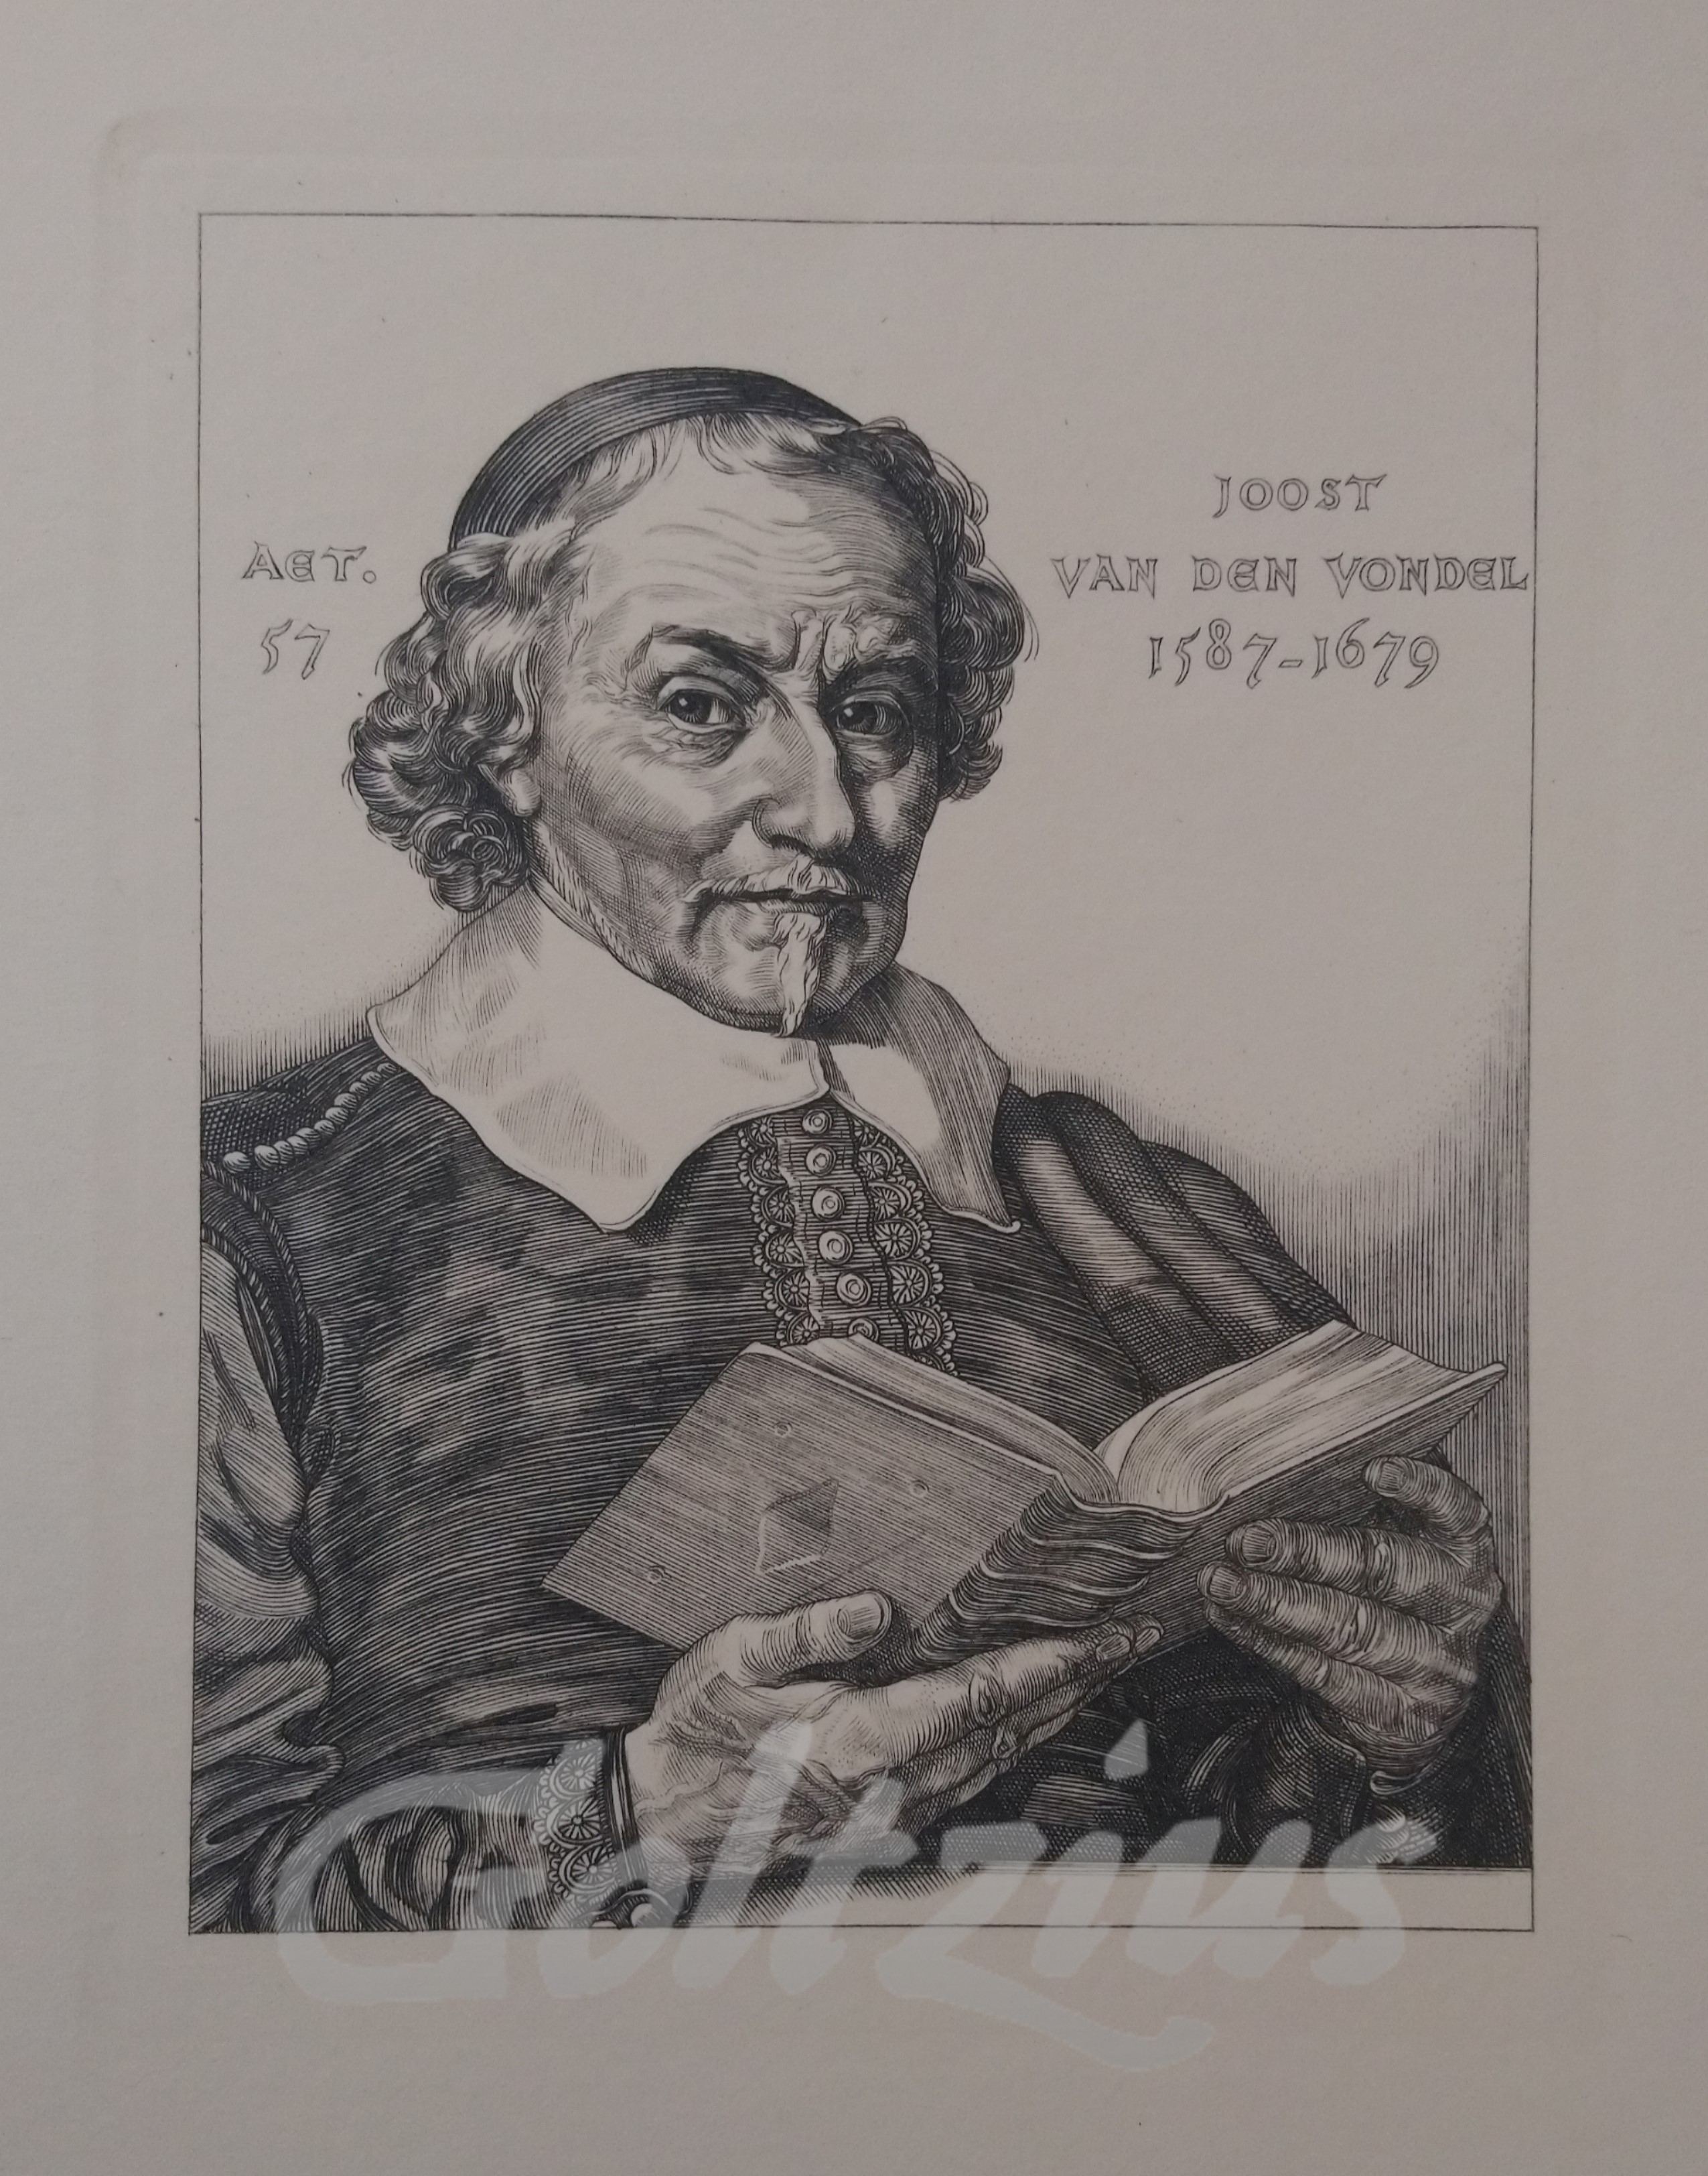 REITSMA-VALENÇA, ENGELIEN, Portrait of Dutch poet Joost van den Vondel